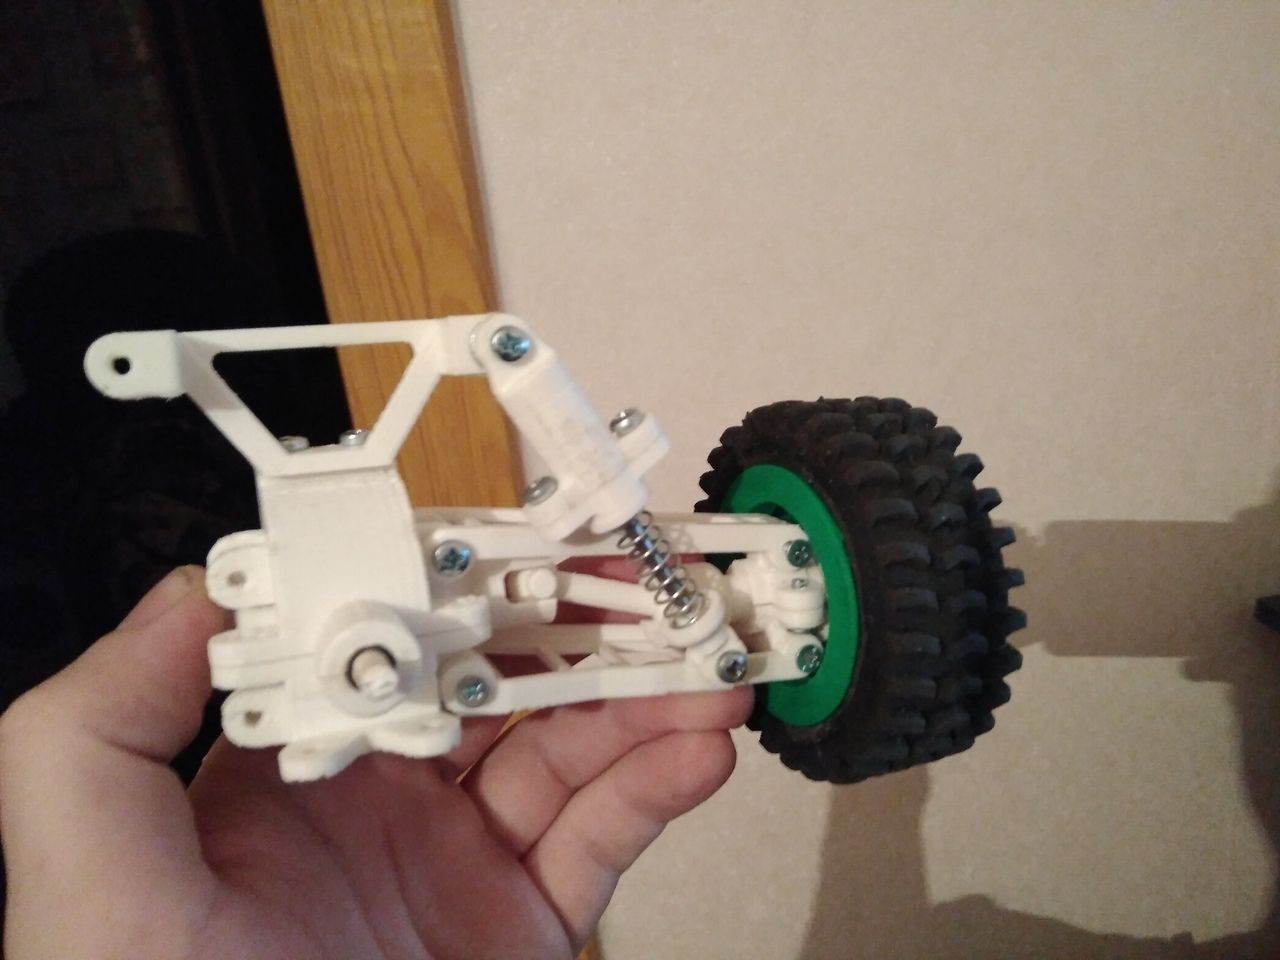 Шасси РУ машинки напечатанное на 3D принтере